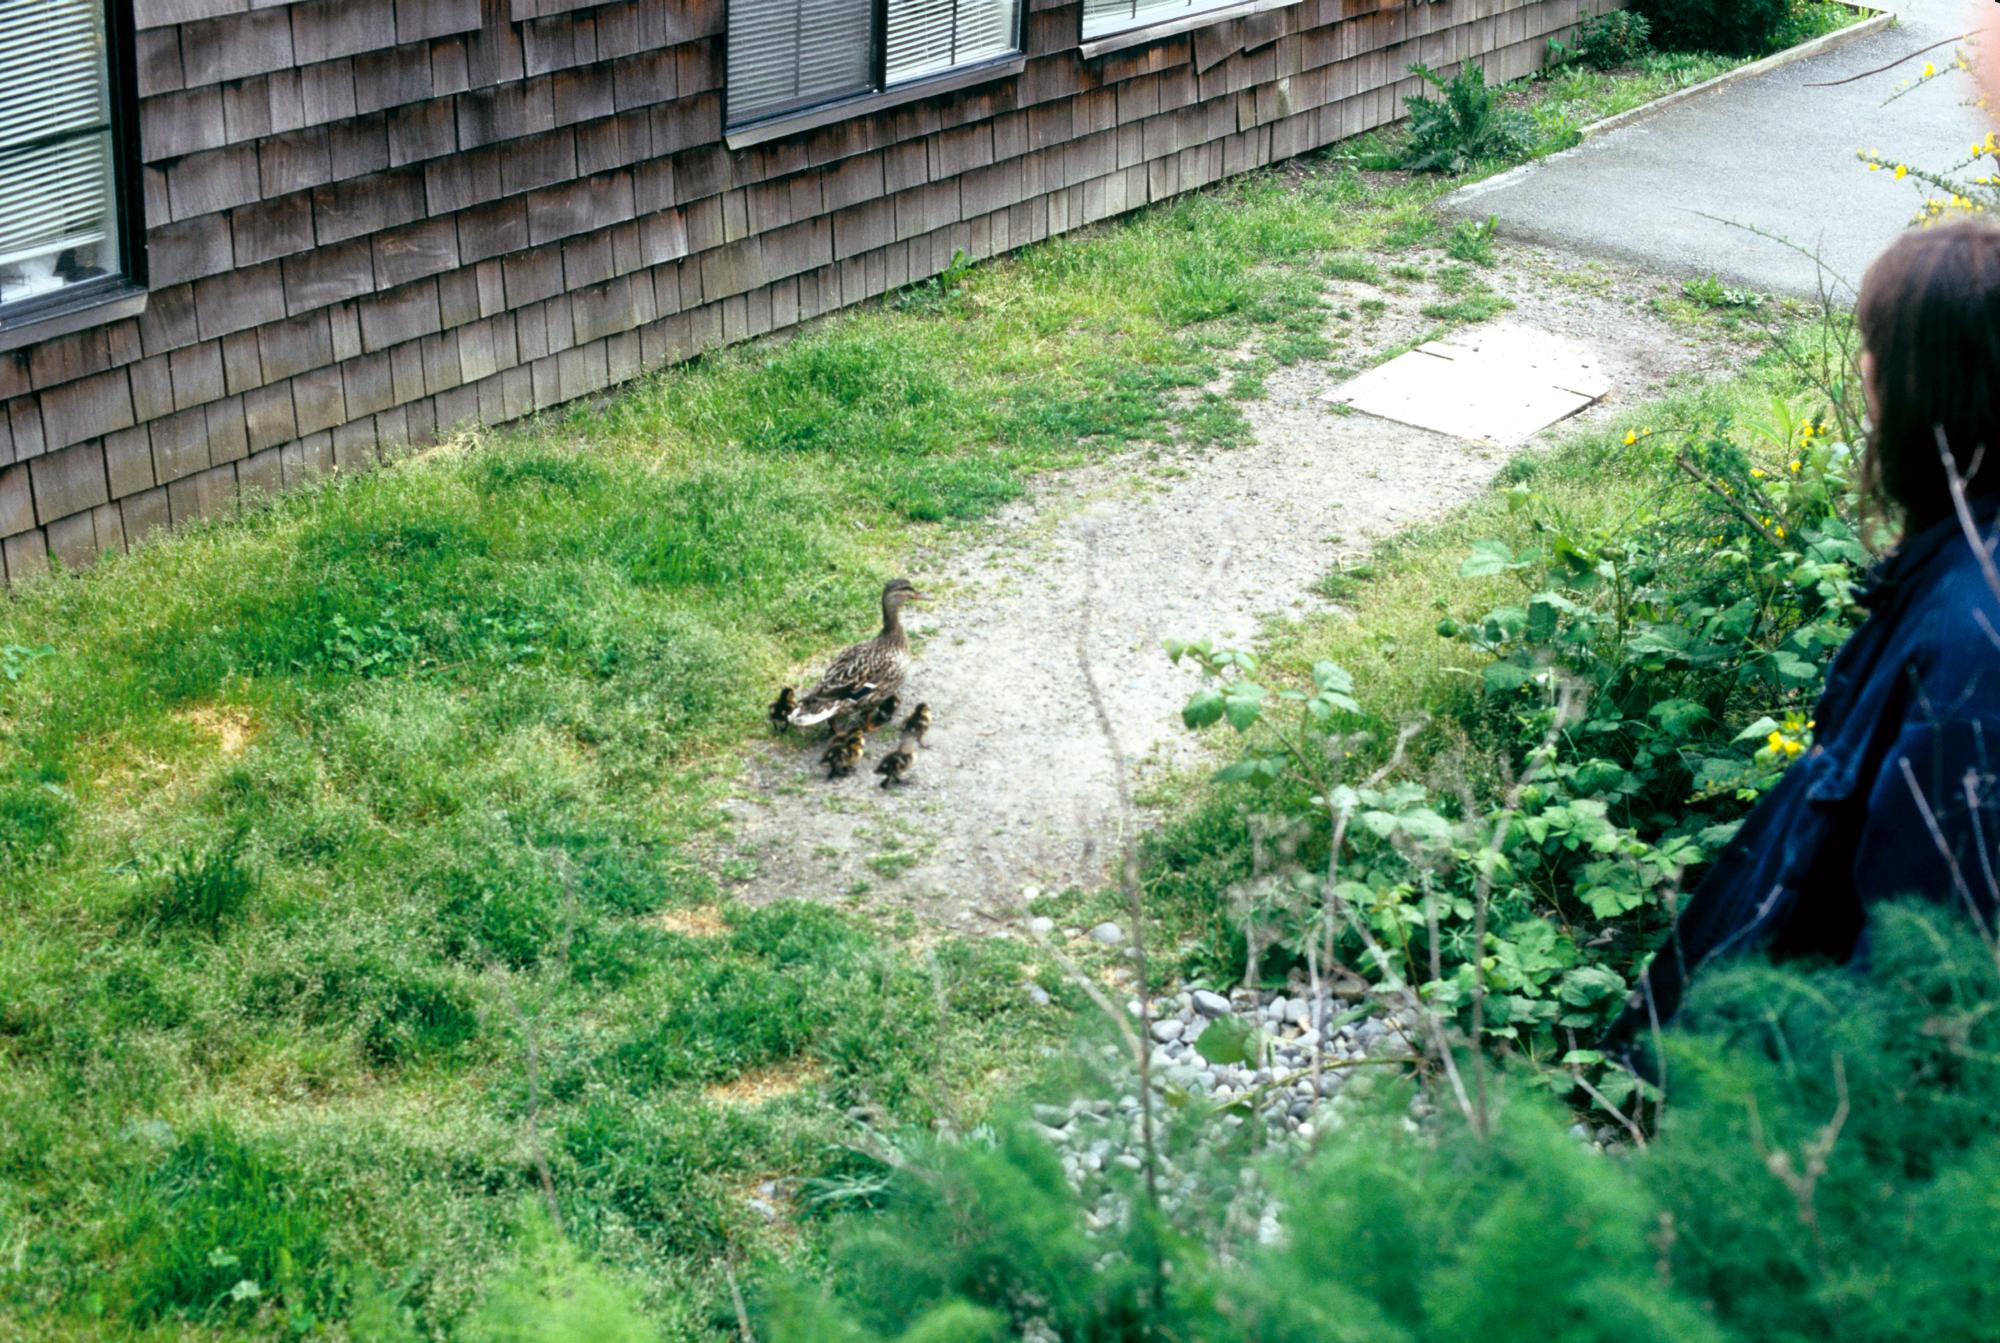 Seattle (1995) - Ducklings